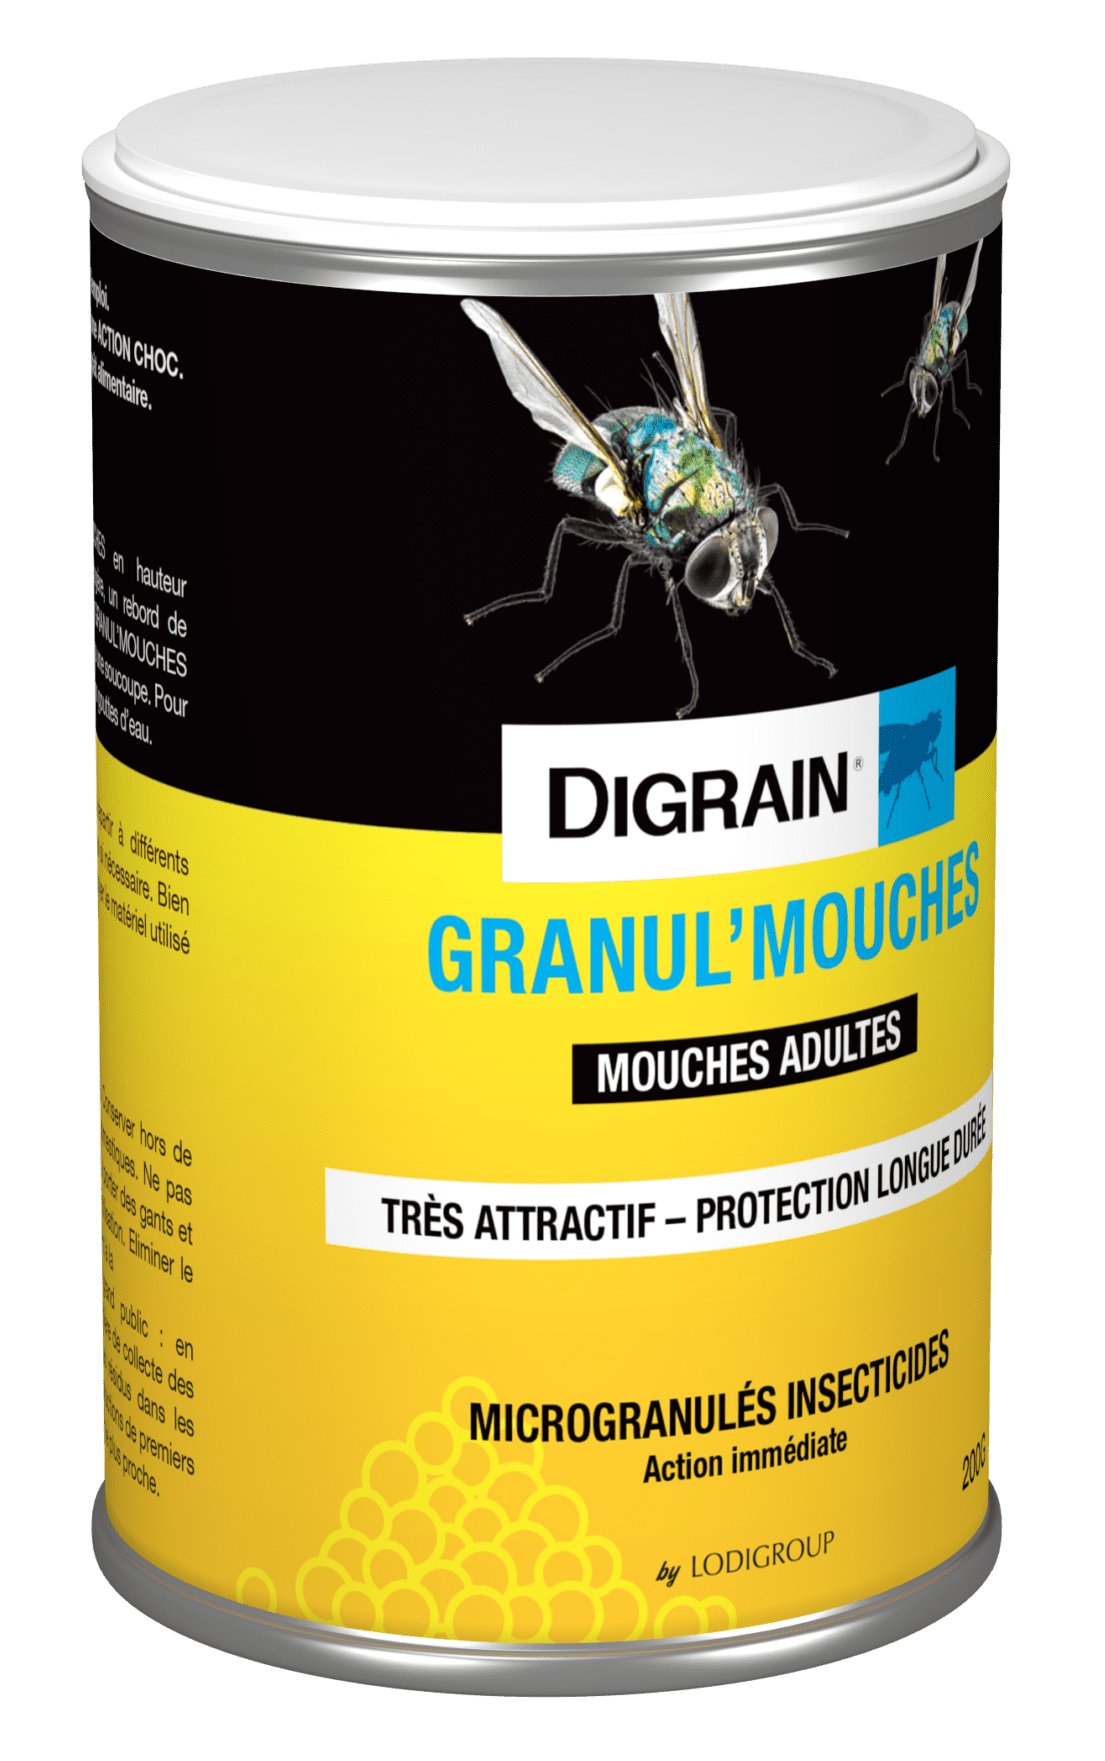 Produit Anti Mouche - Digrain Granul'mouches - Eradicateur